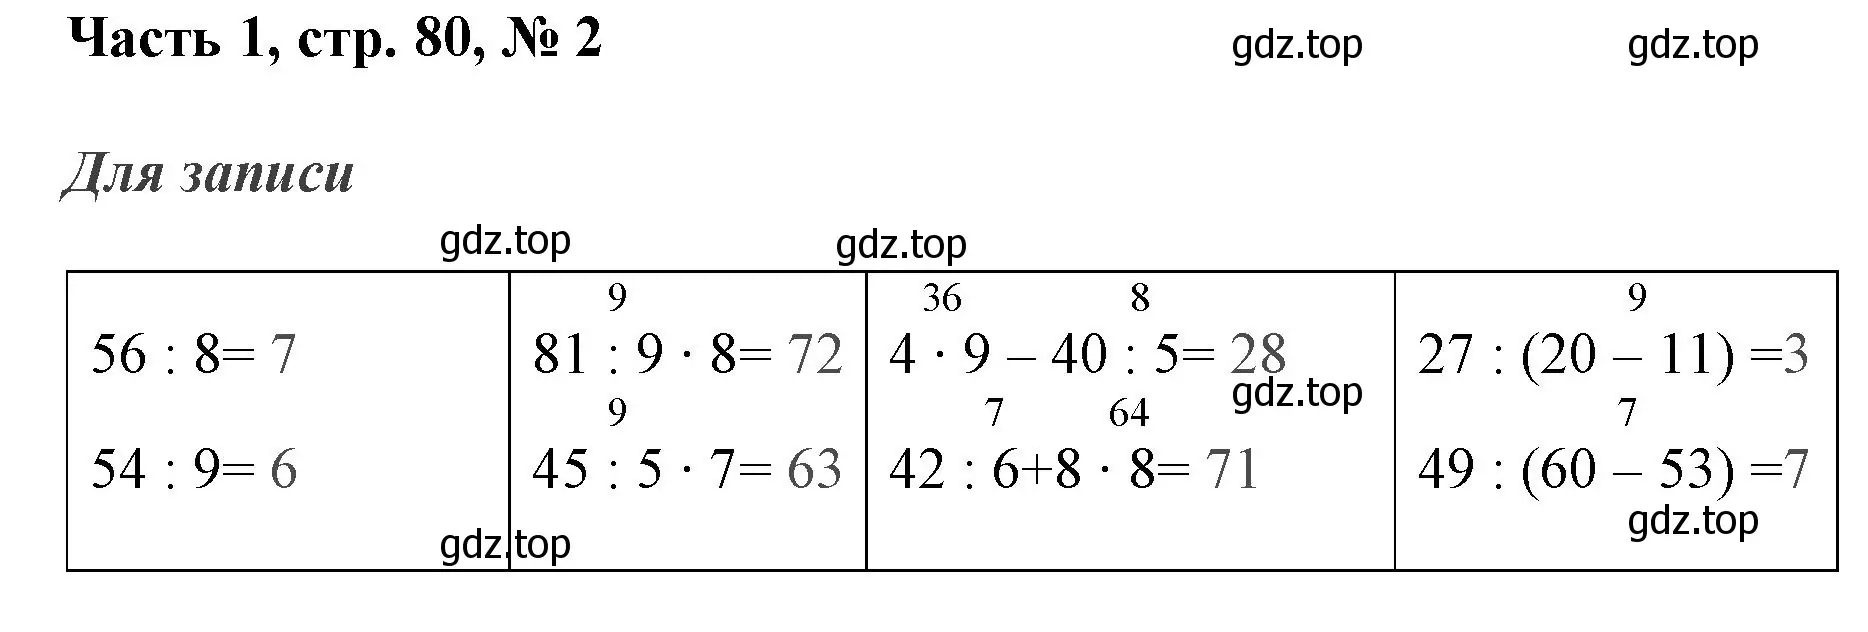 Решение номер 2 (страница 80) гдз по математике 3 класс Моро, Бантова, учебник 1 часть